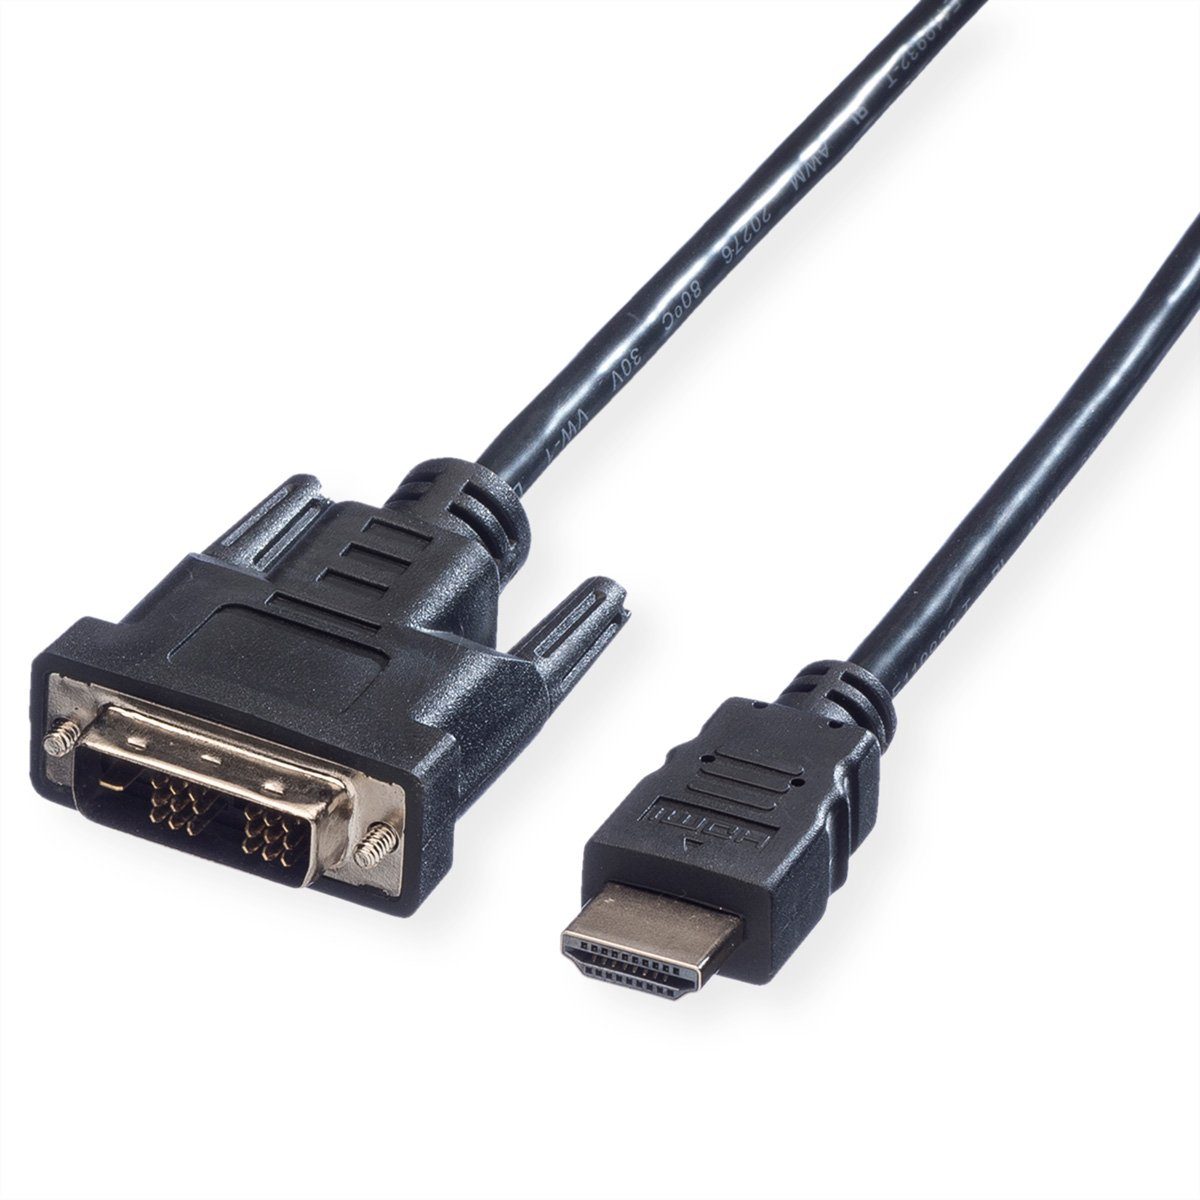 VALUE Kabel DVI (18+1) ST - HDMI ST Audio- & Video-Kabel, DVI-D 18+1, Single-Link Männlich (Stecker), HDMI Typ A Männlich (Stecker) (100.0 cm)